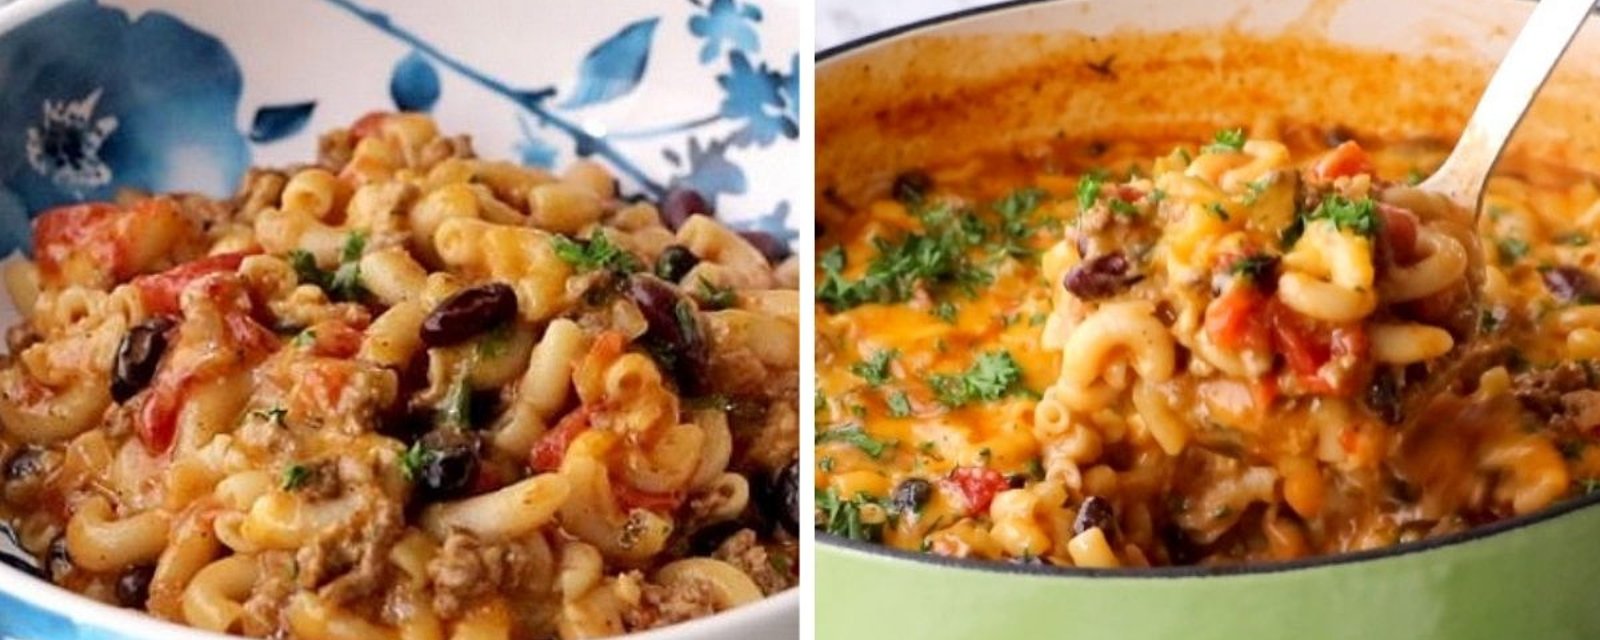 Un deux-en-un savoureux: macaroni au fromage et chili aux fèves et à la viande